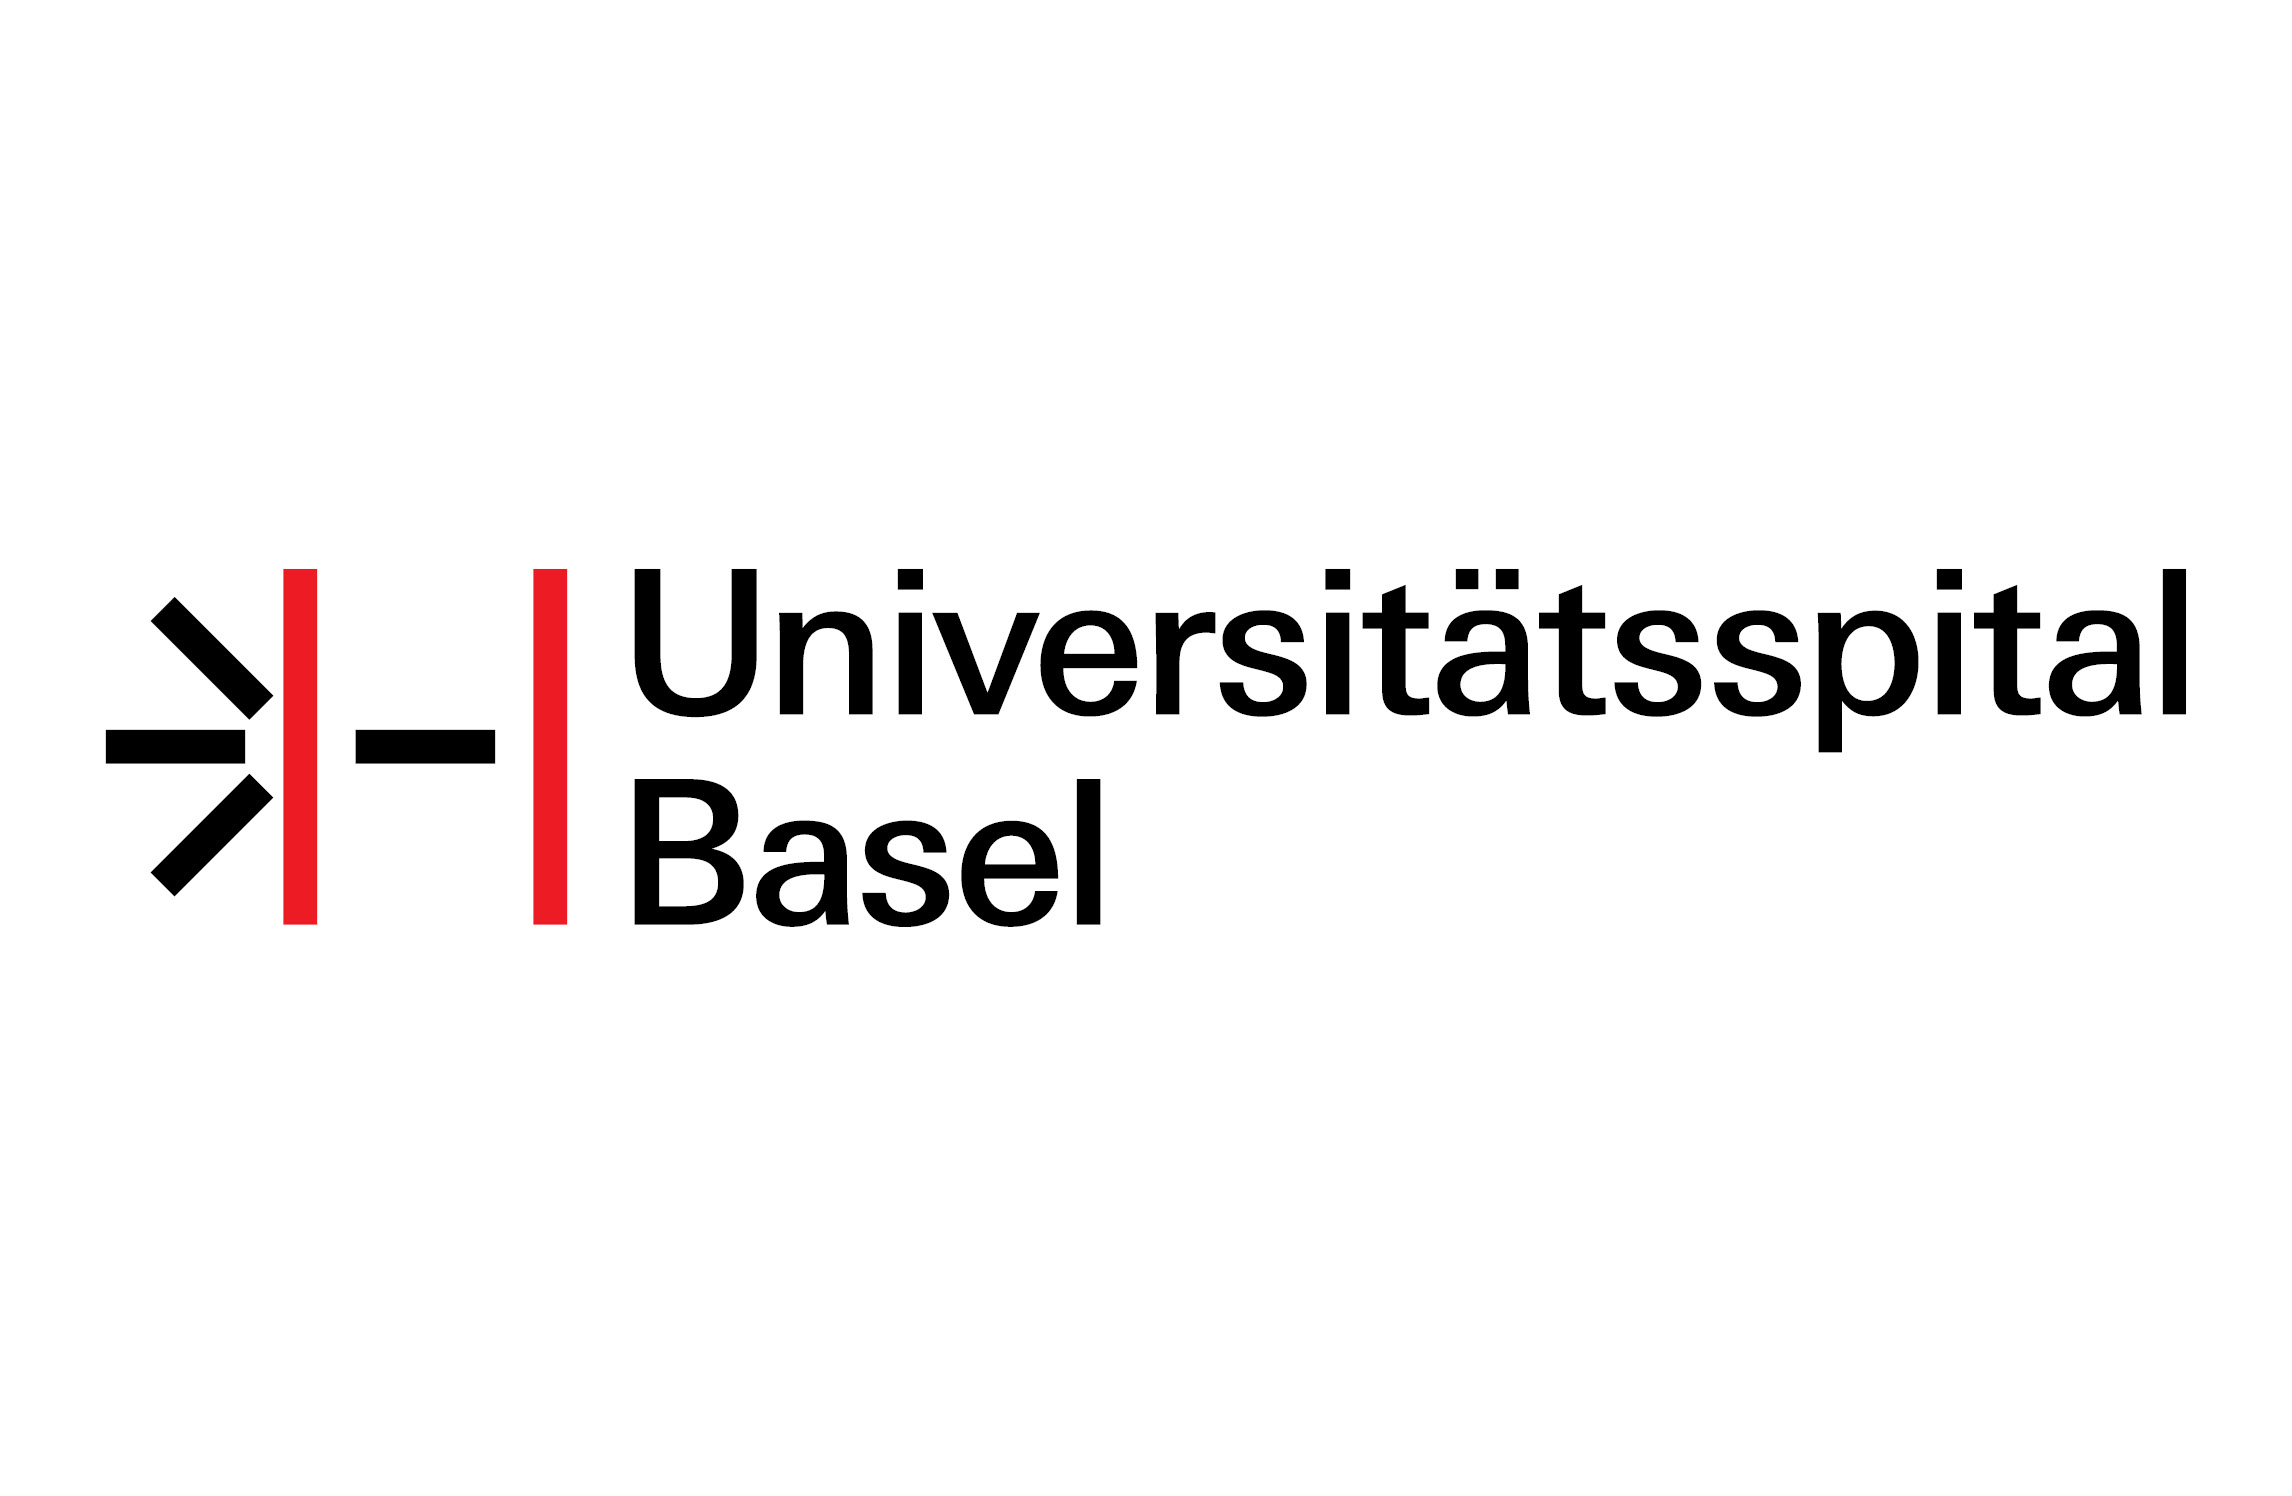 Base university logo